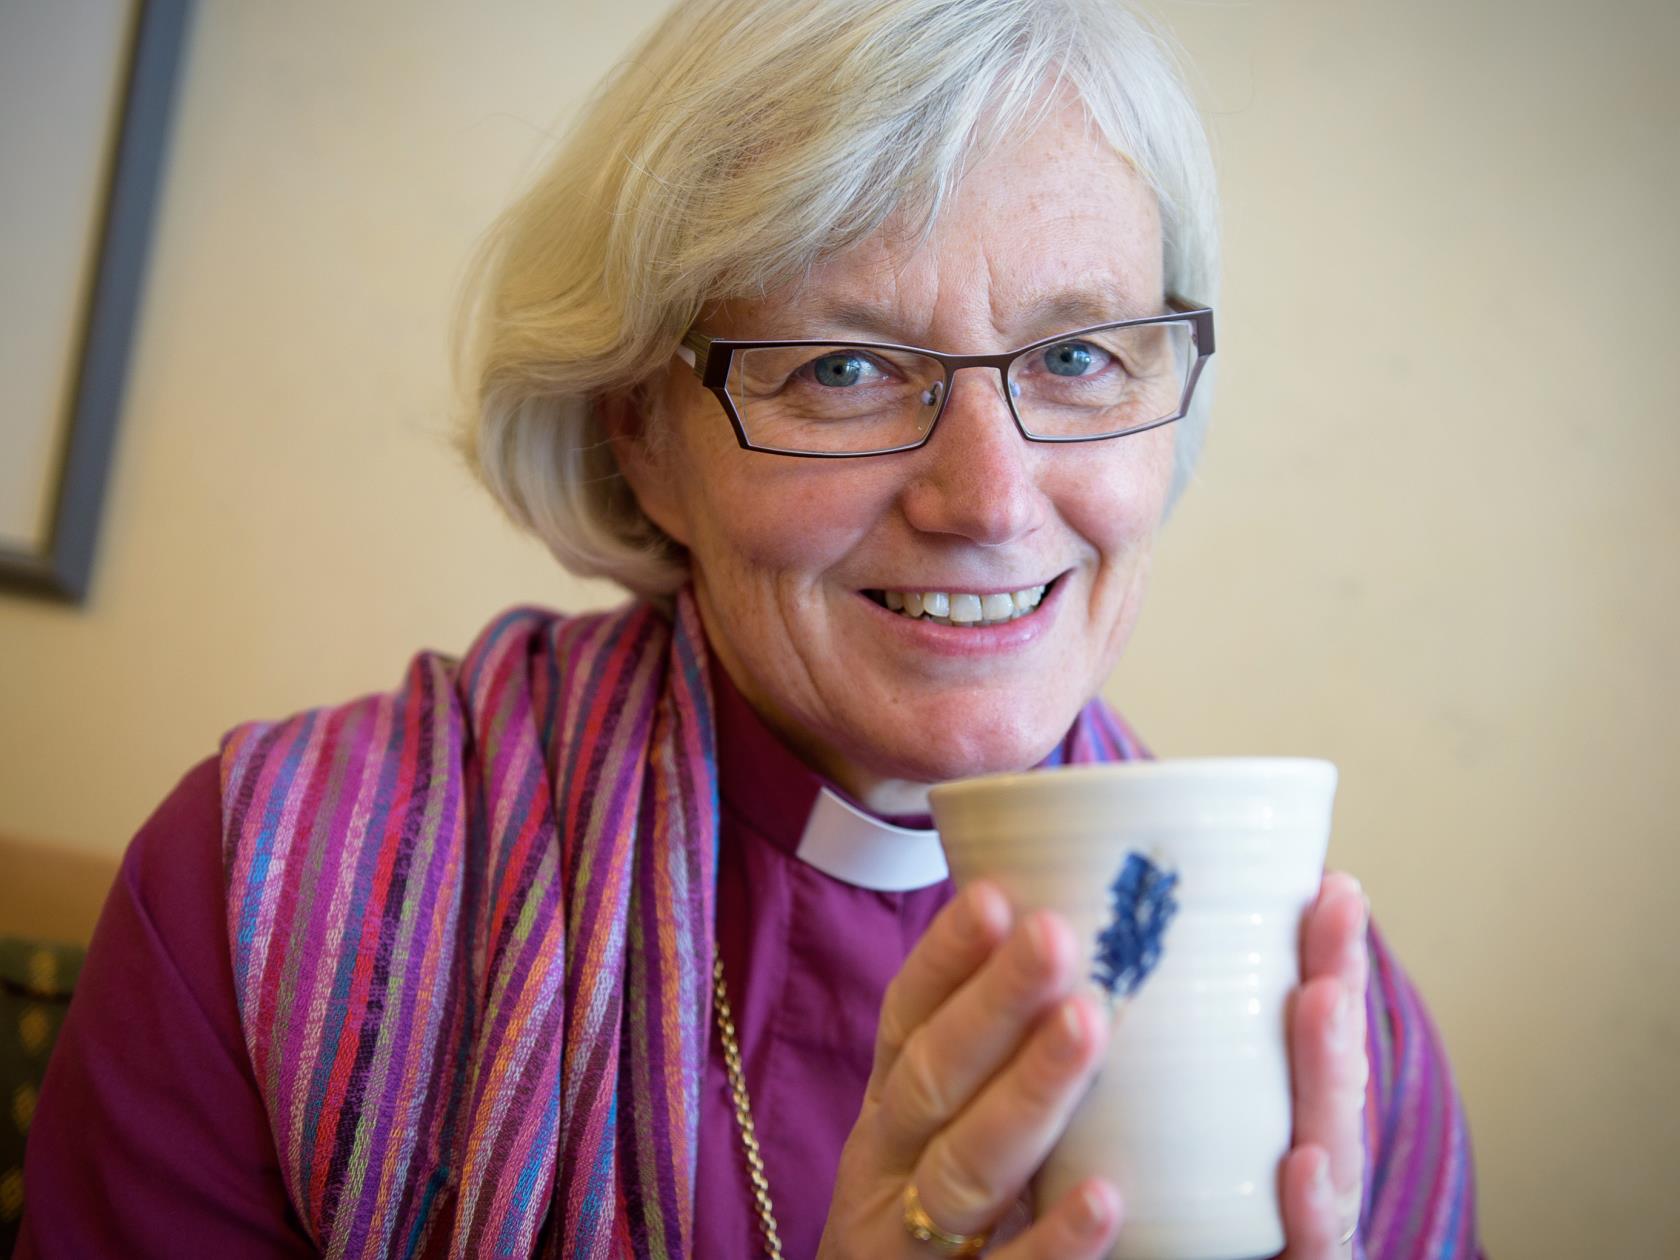 Porträttbild på ärkebiskop Antje Jackelén som sitter med en mugg i händerna.